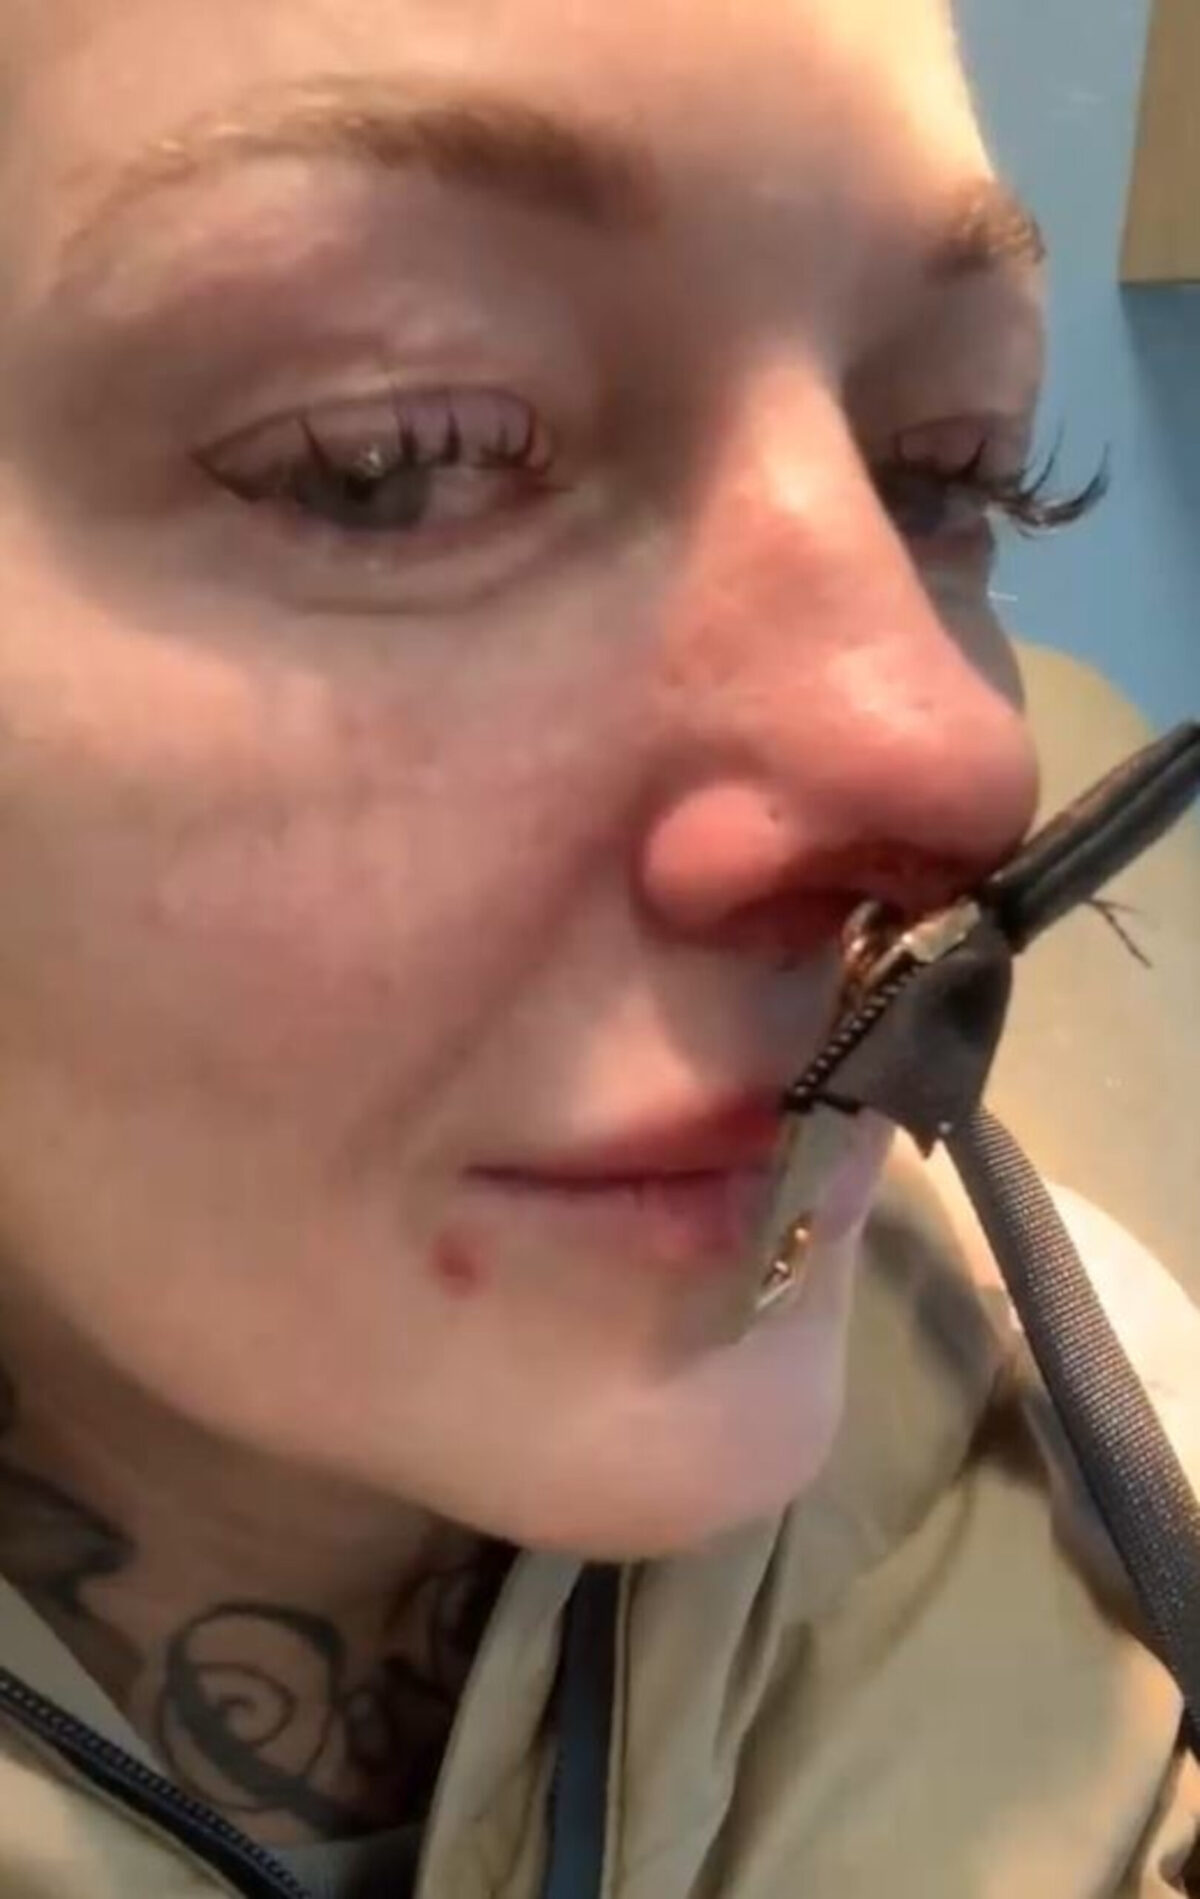 Woman left in tears after getting handbag zip stuck through her nose in  freak accident - Mirror Online